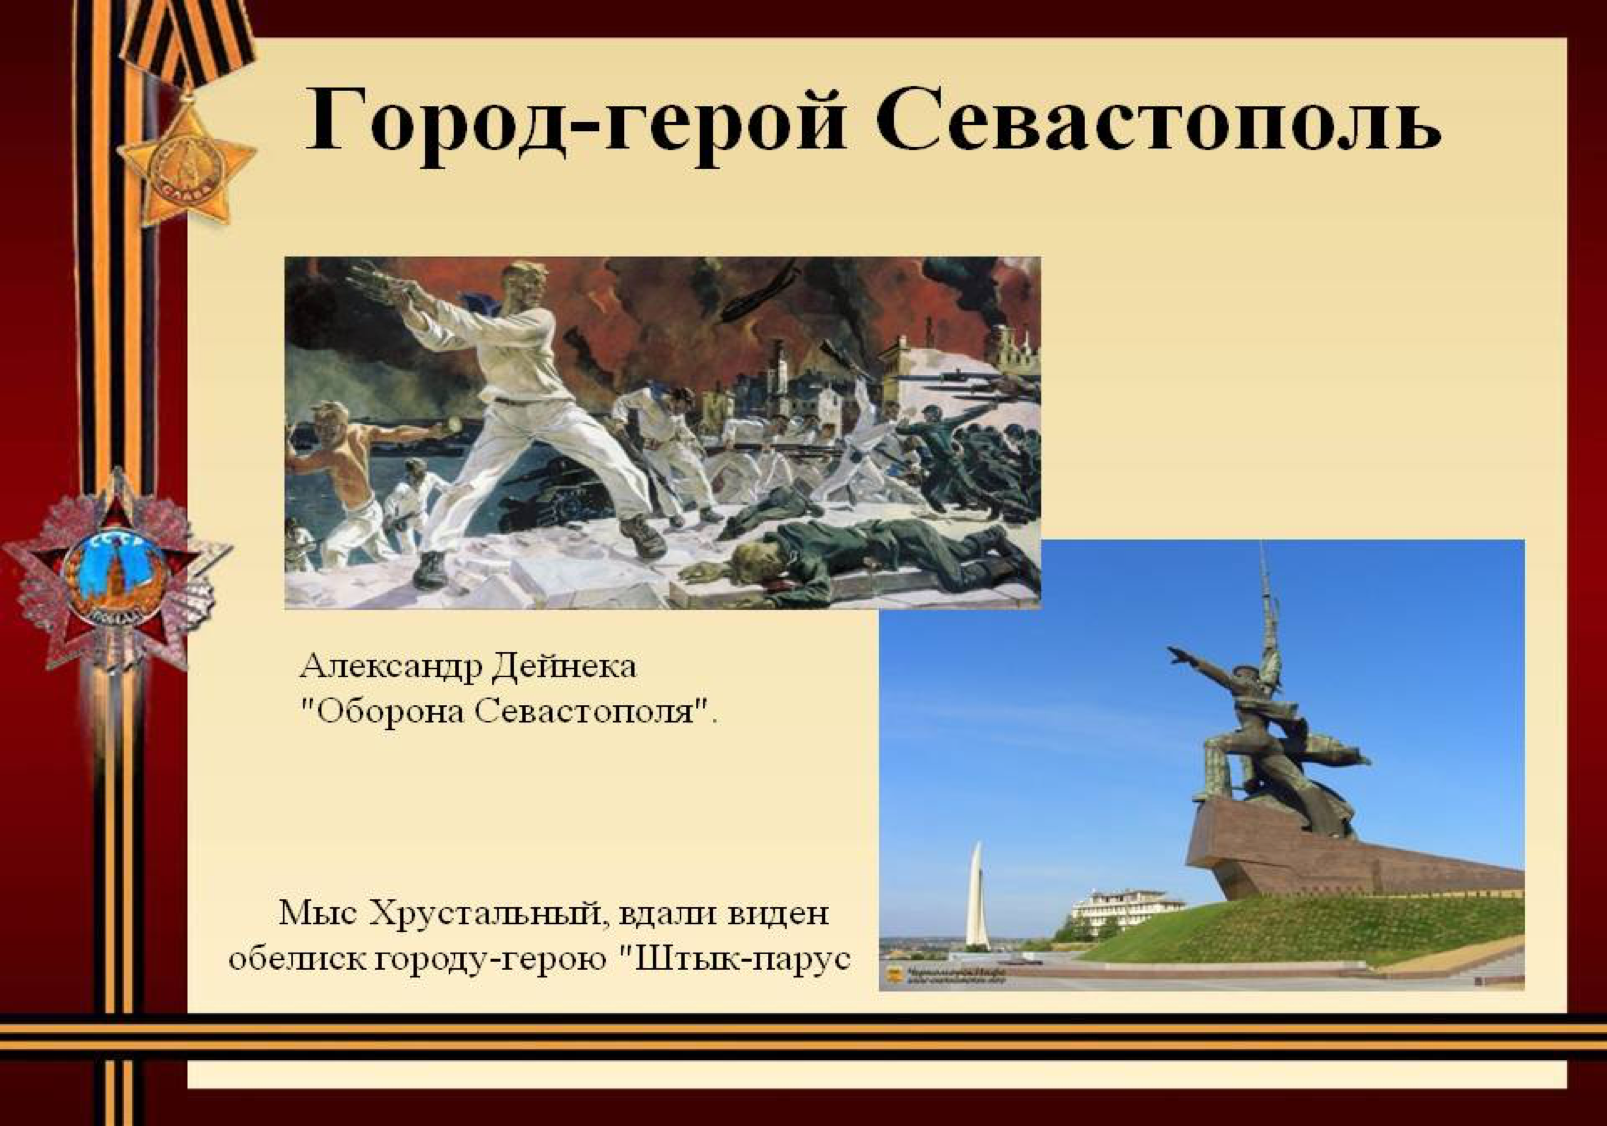 Города герои великой отечественной войны севастополь